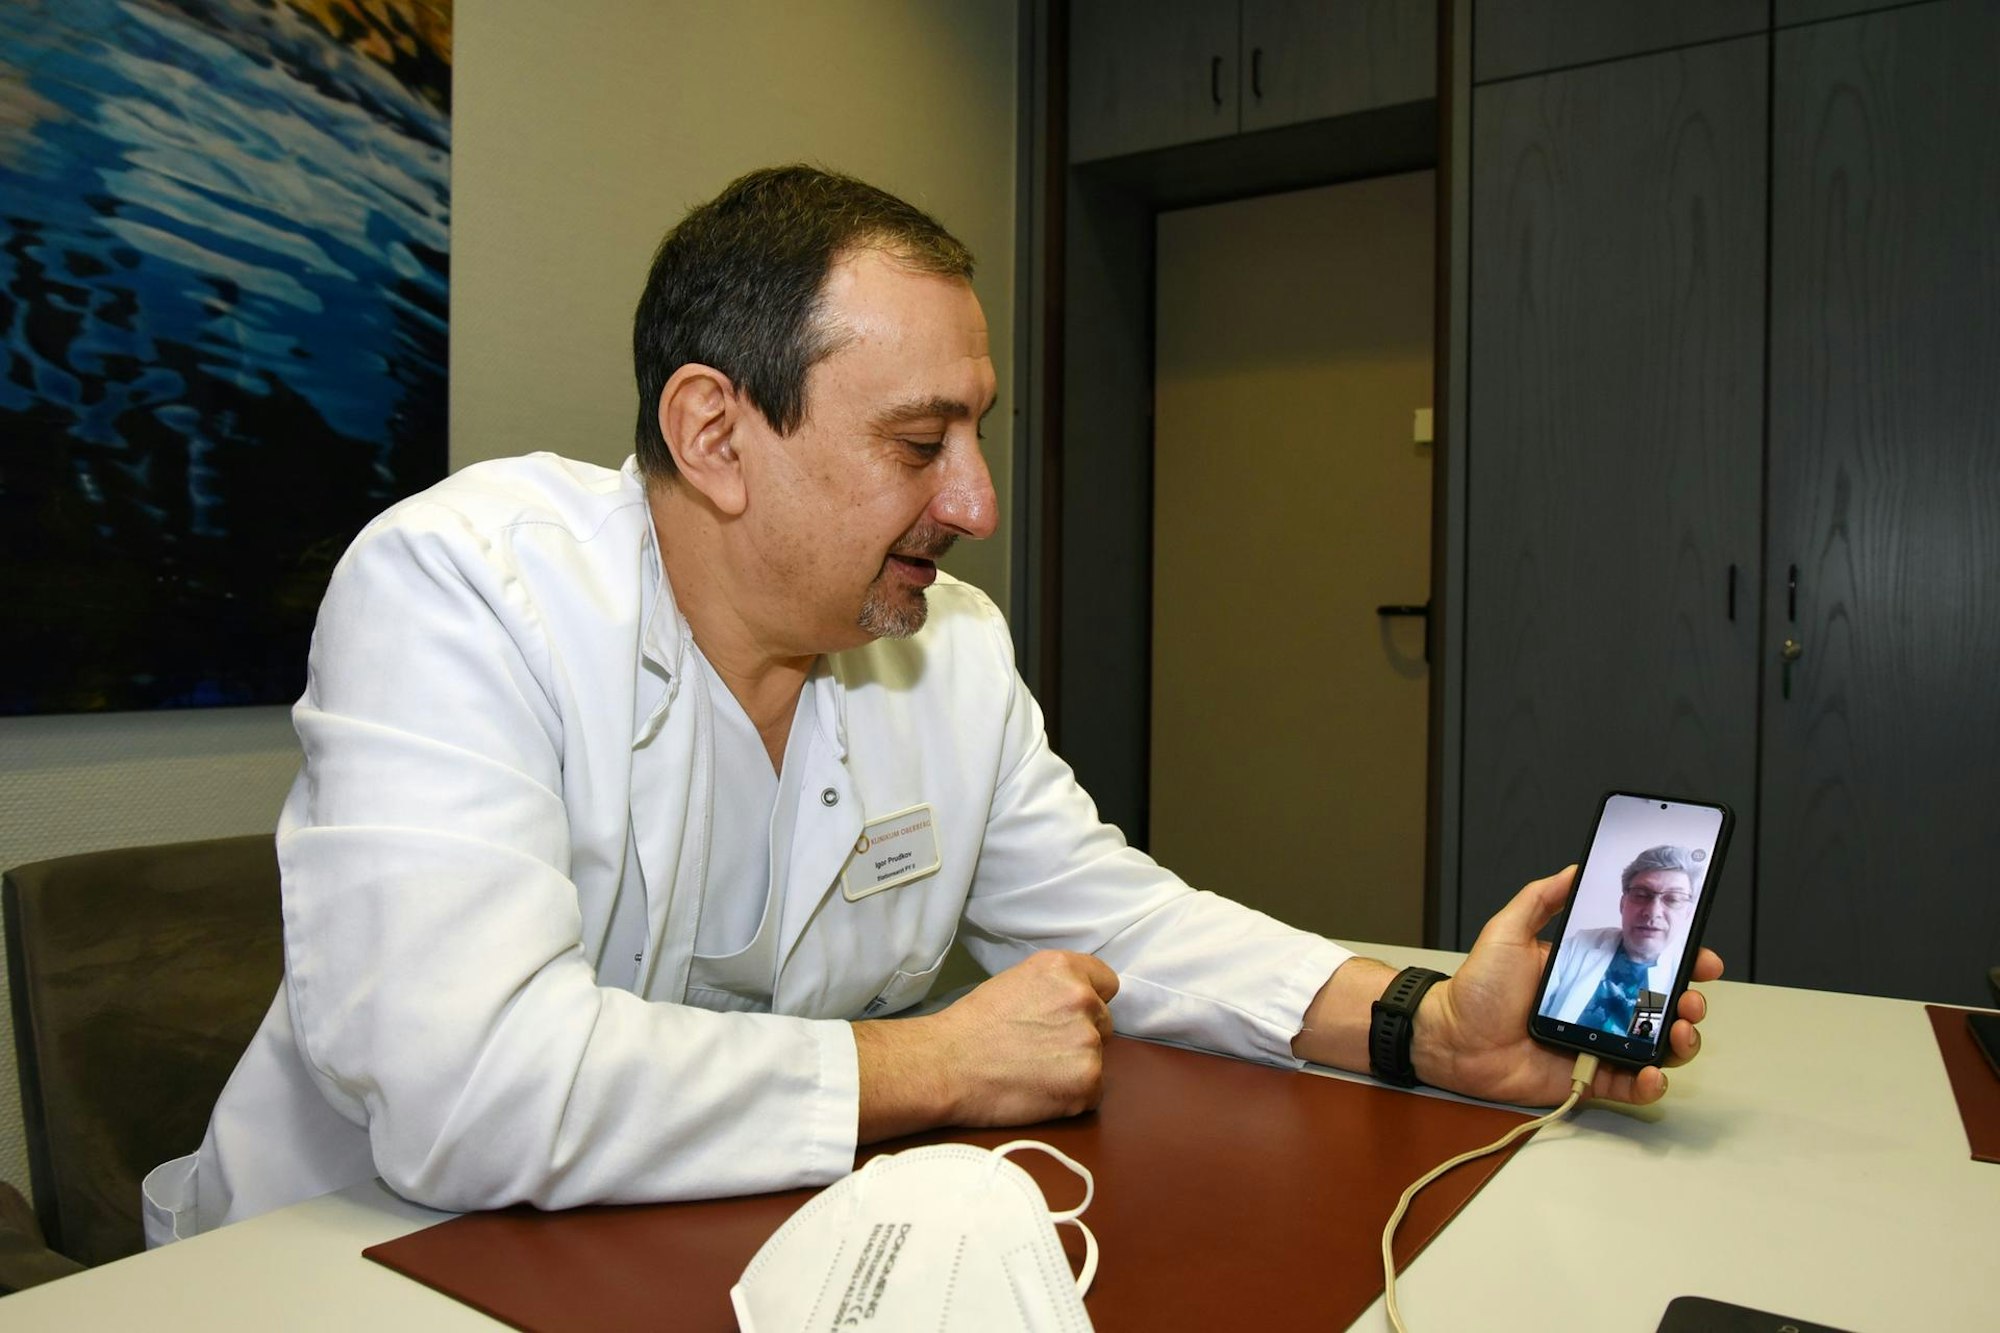 Igor Prudkov hält während eines Videotelefonats mit seinem Freund Vitaliy P. in der Hand, auf dessen Bildschirm dieser zu sehen ist.